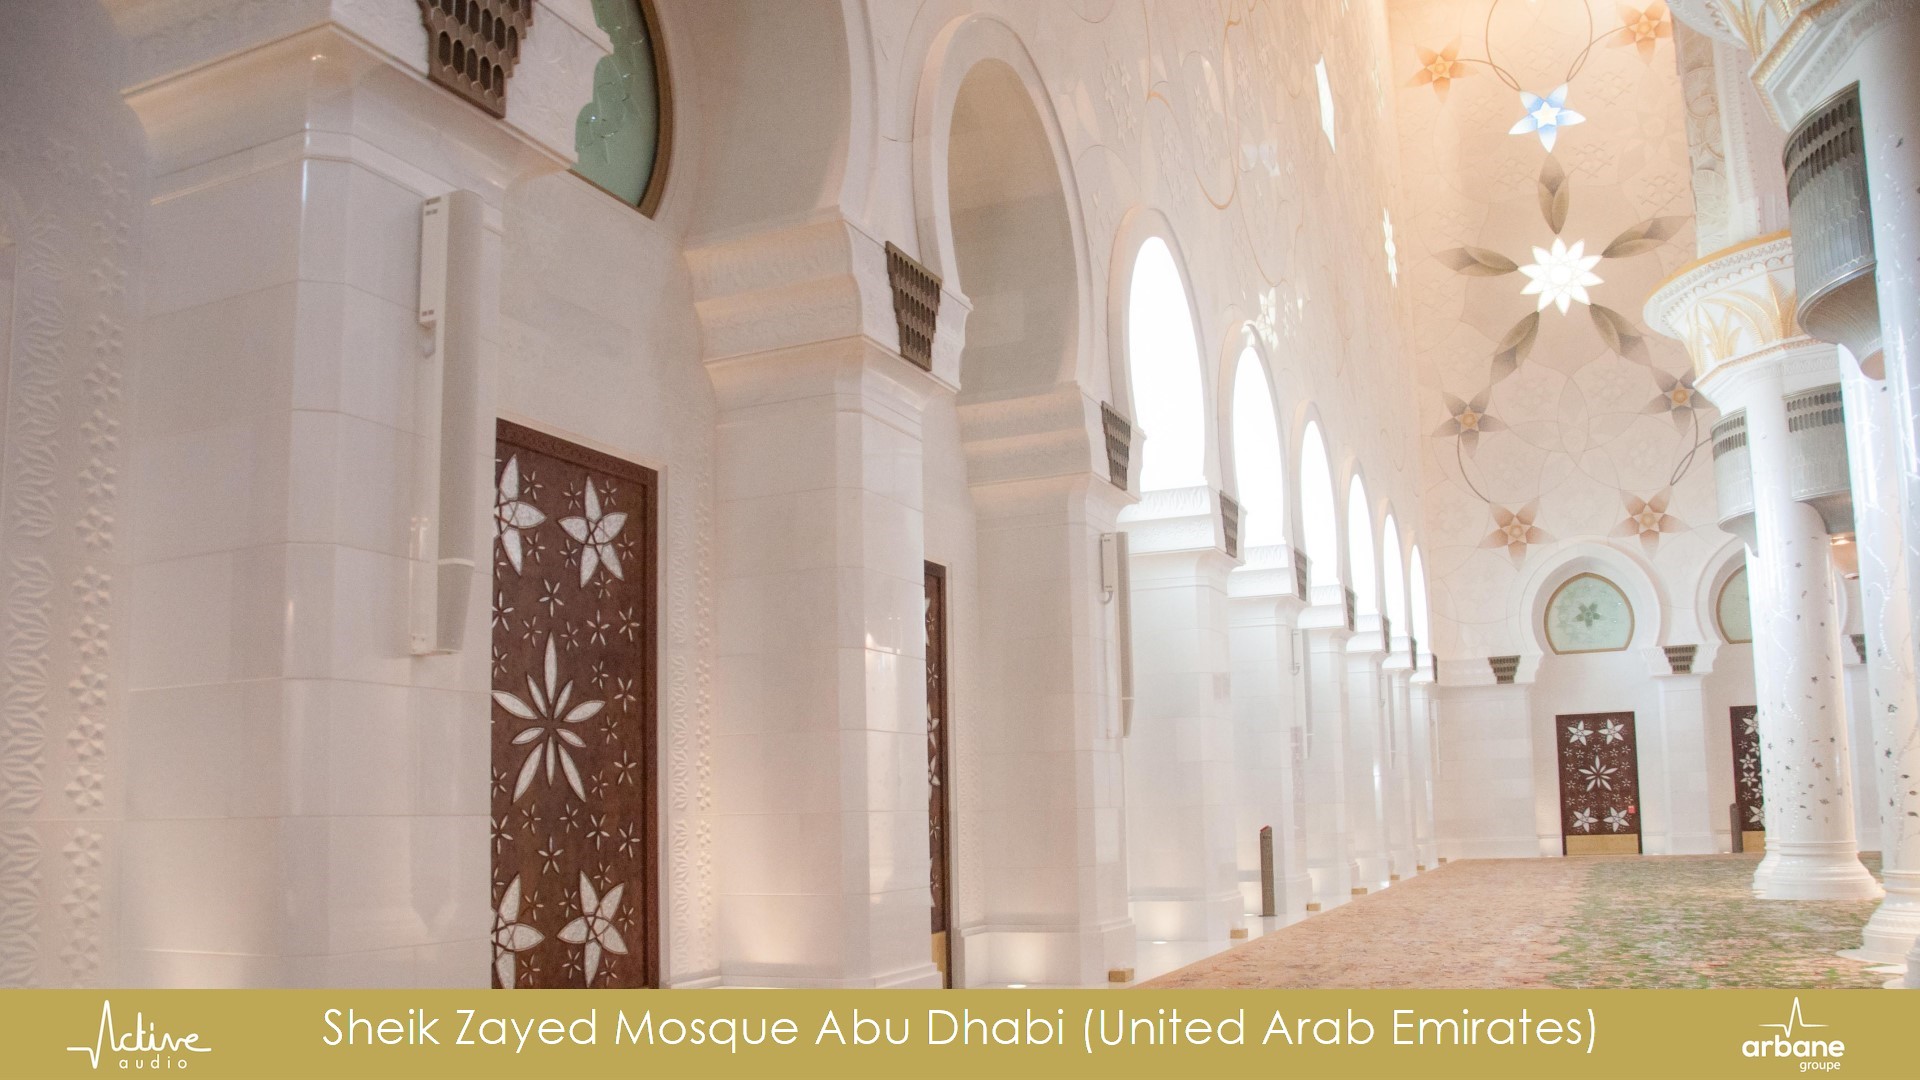 Sheikh Zayed Mosque Abu Dhabi, United Arab Emirates